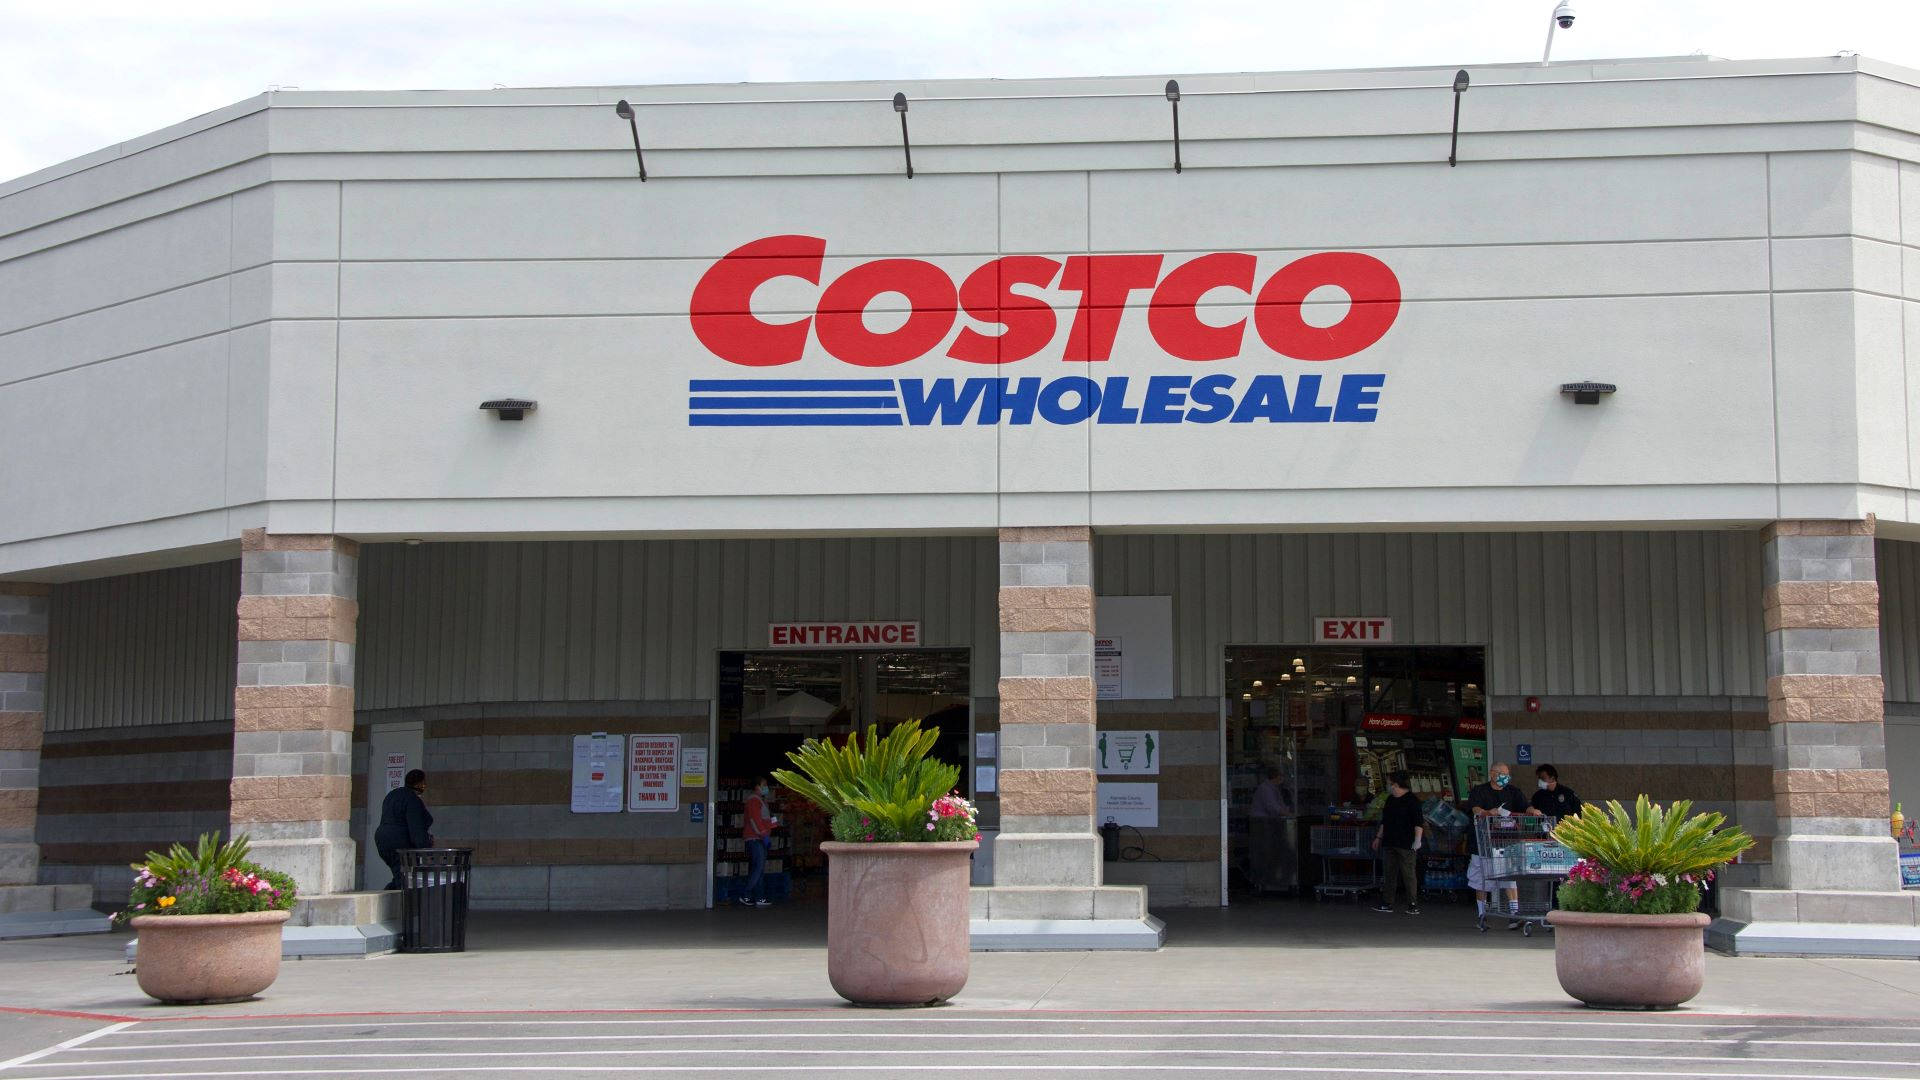 Concrete Store Costco Wholesale Wallpaper